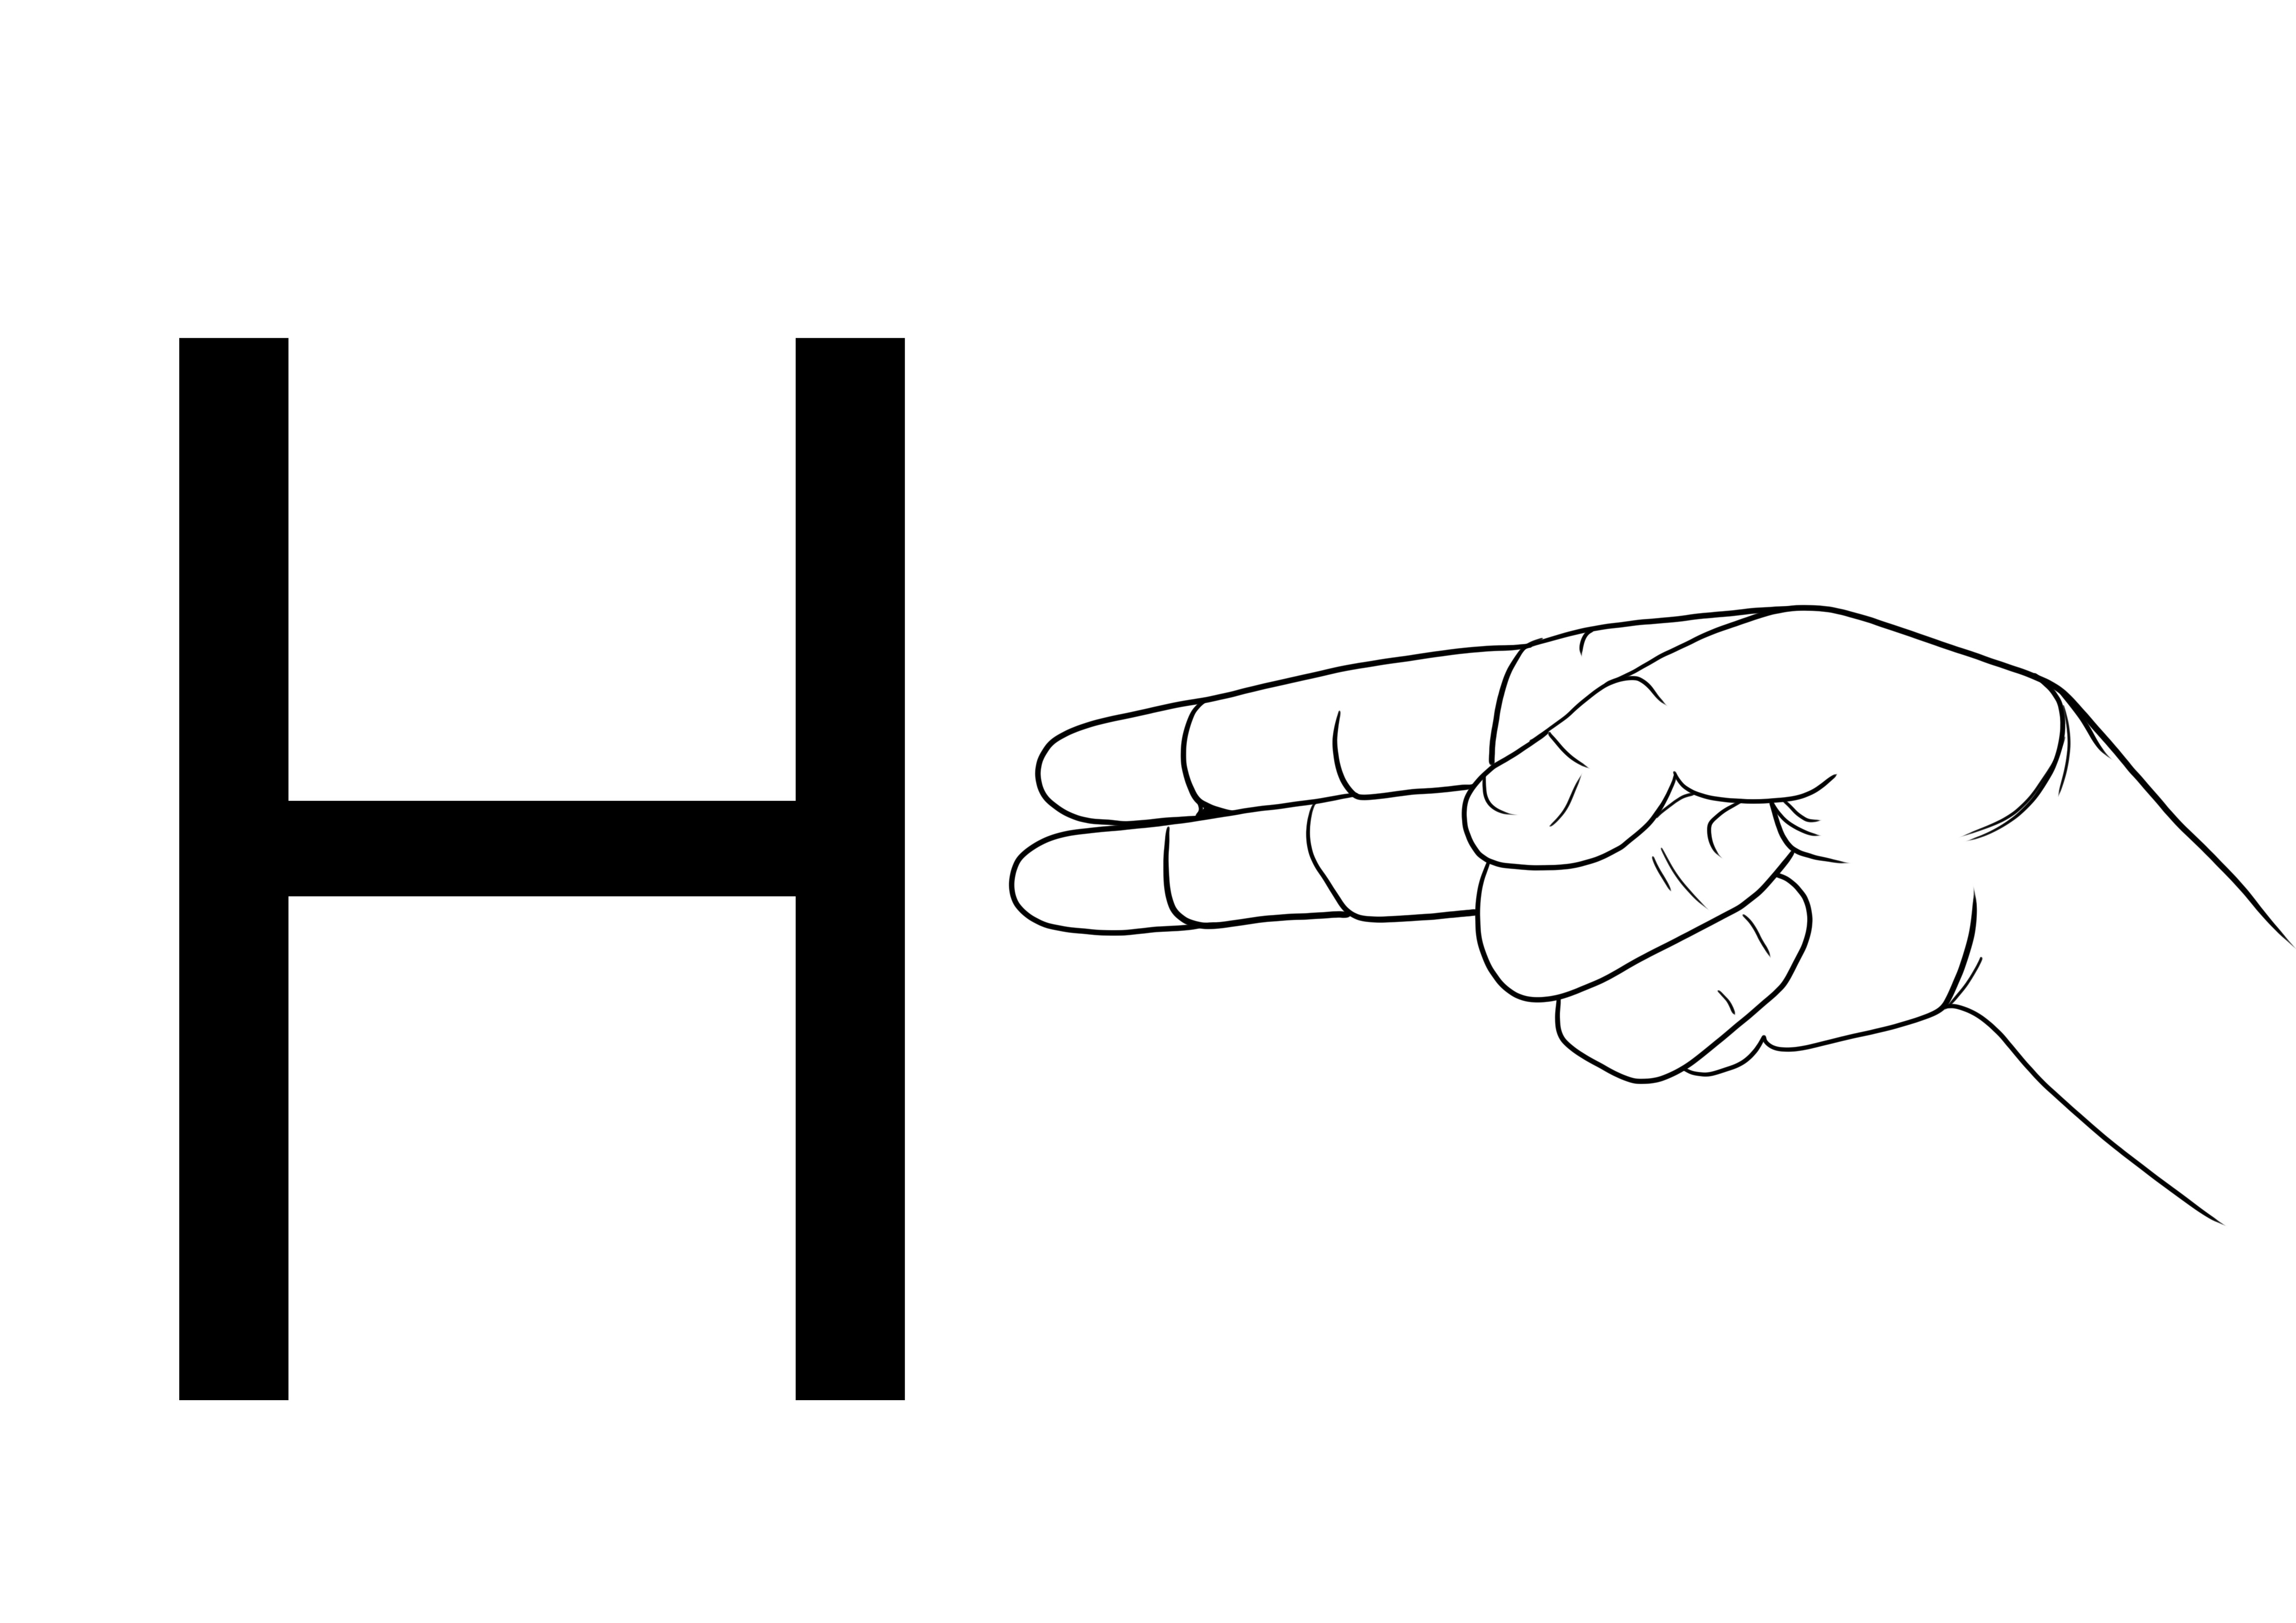 Immagine da colorare ASL lettera H gratis